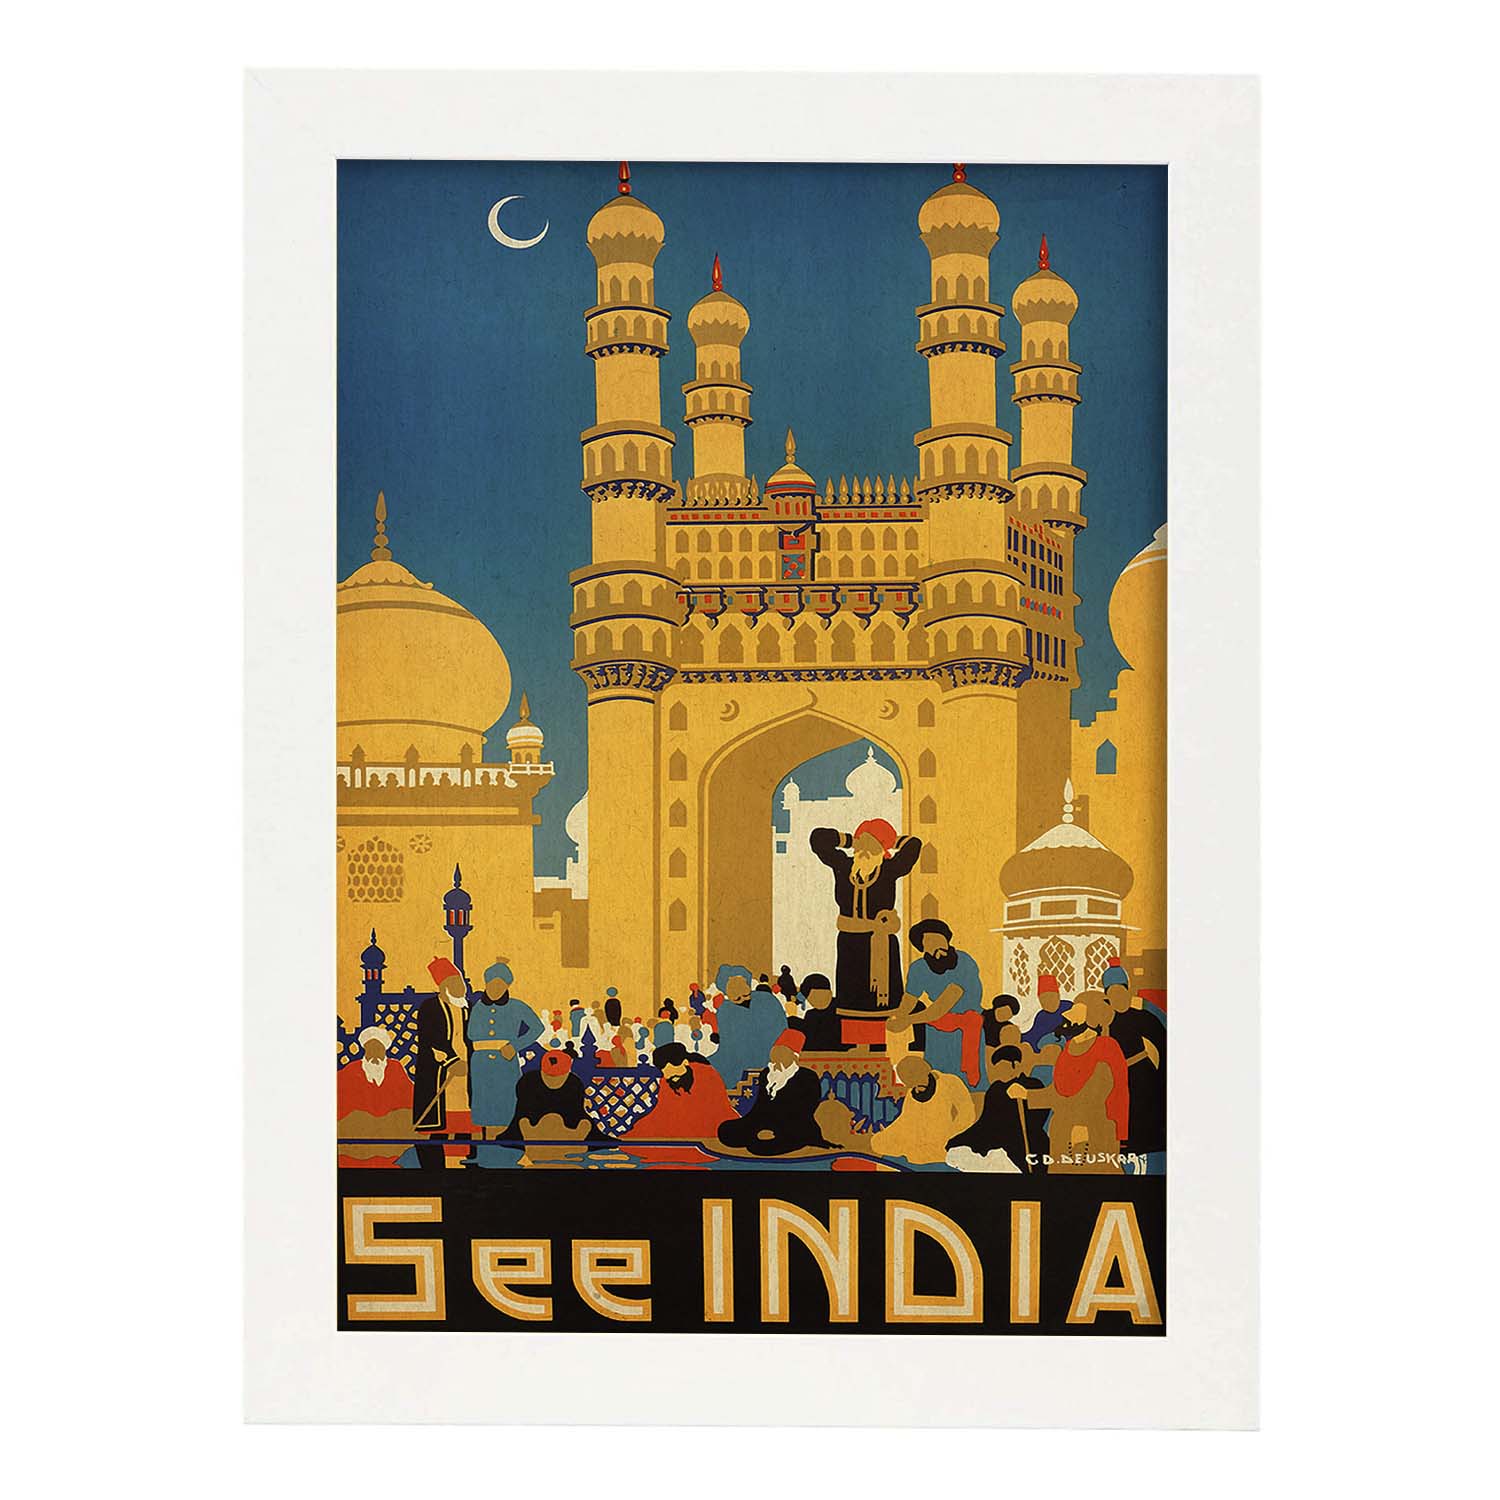 Poster vintage. Cartel vintage de Asia. Templo de India.-Artwork-Nacnic-A3-Marco Blanco-Nacnic Estudio SL